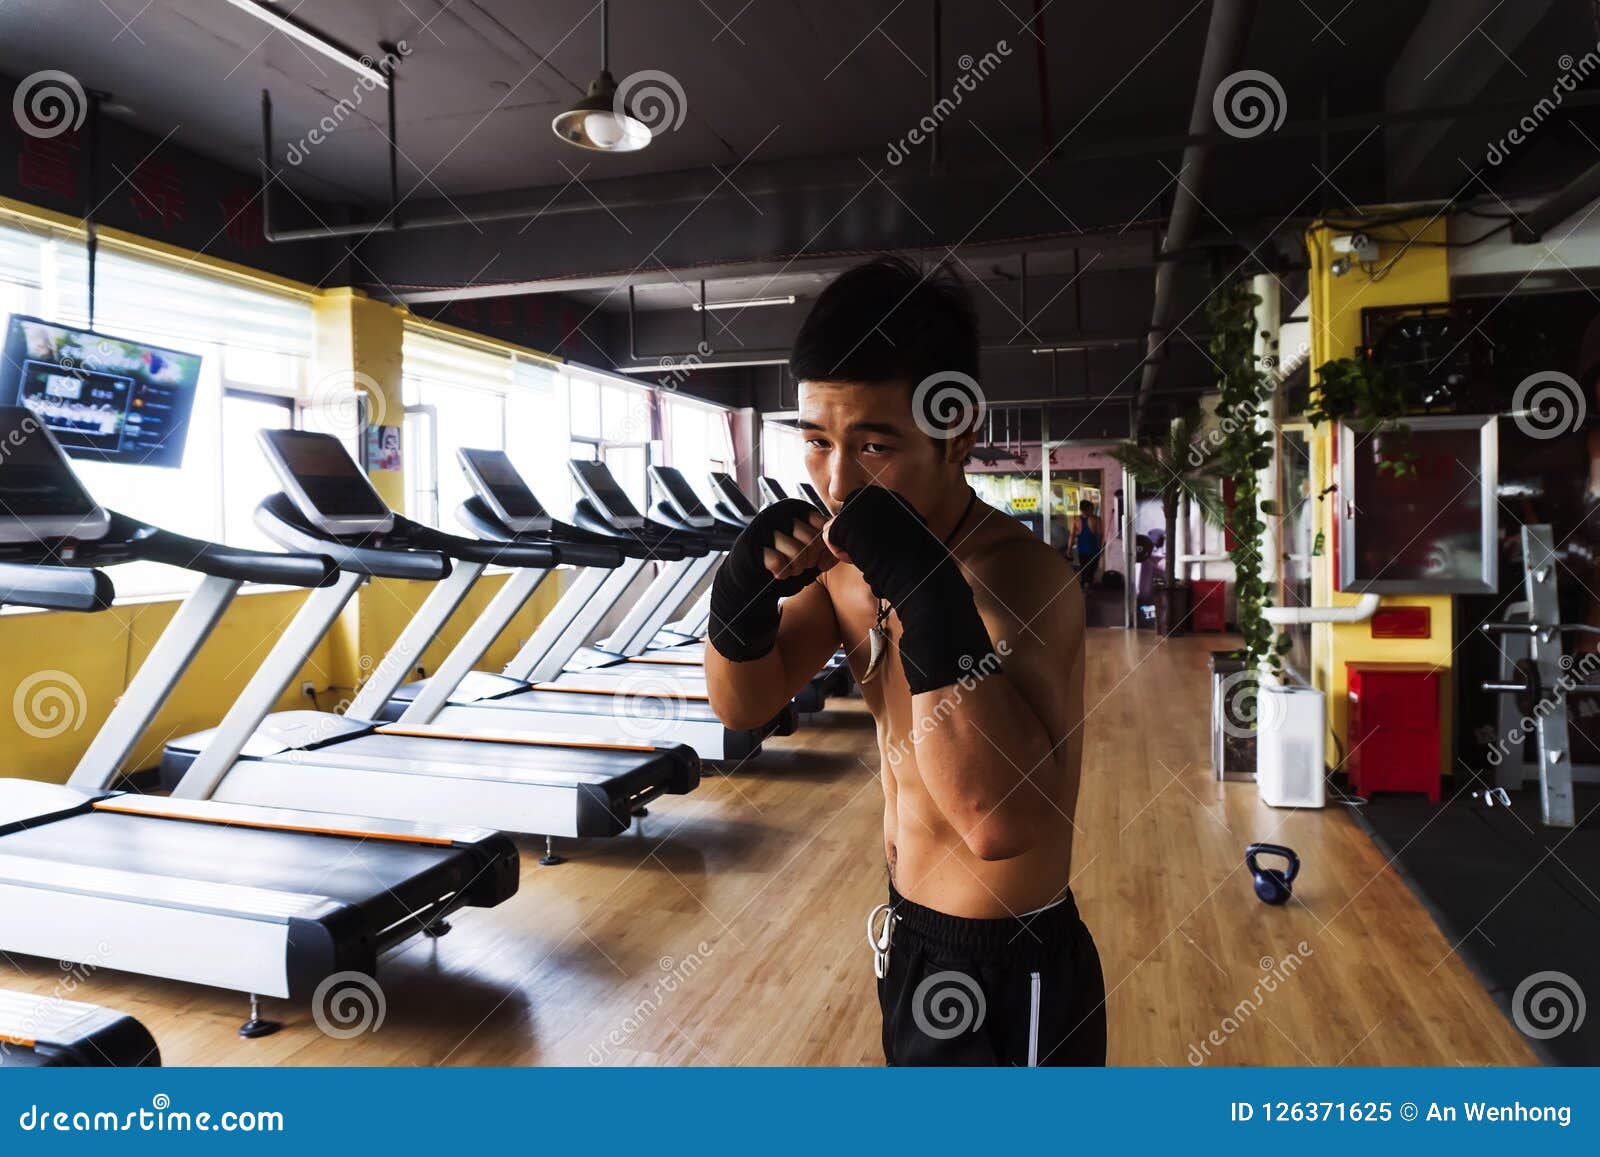 asians man boxing at gym